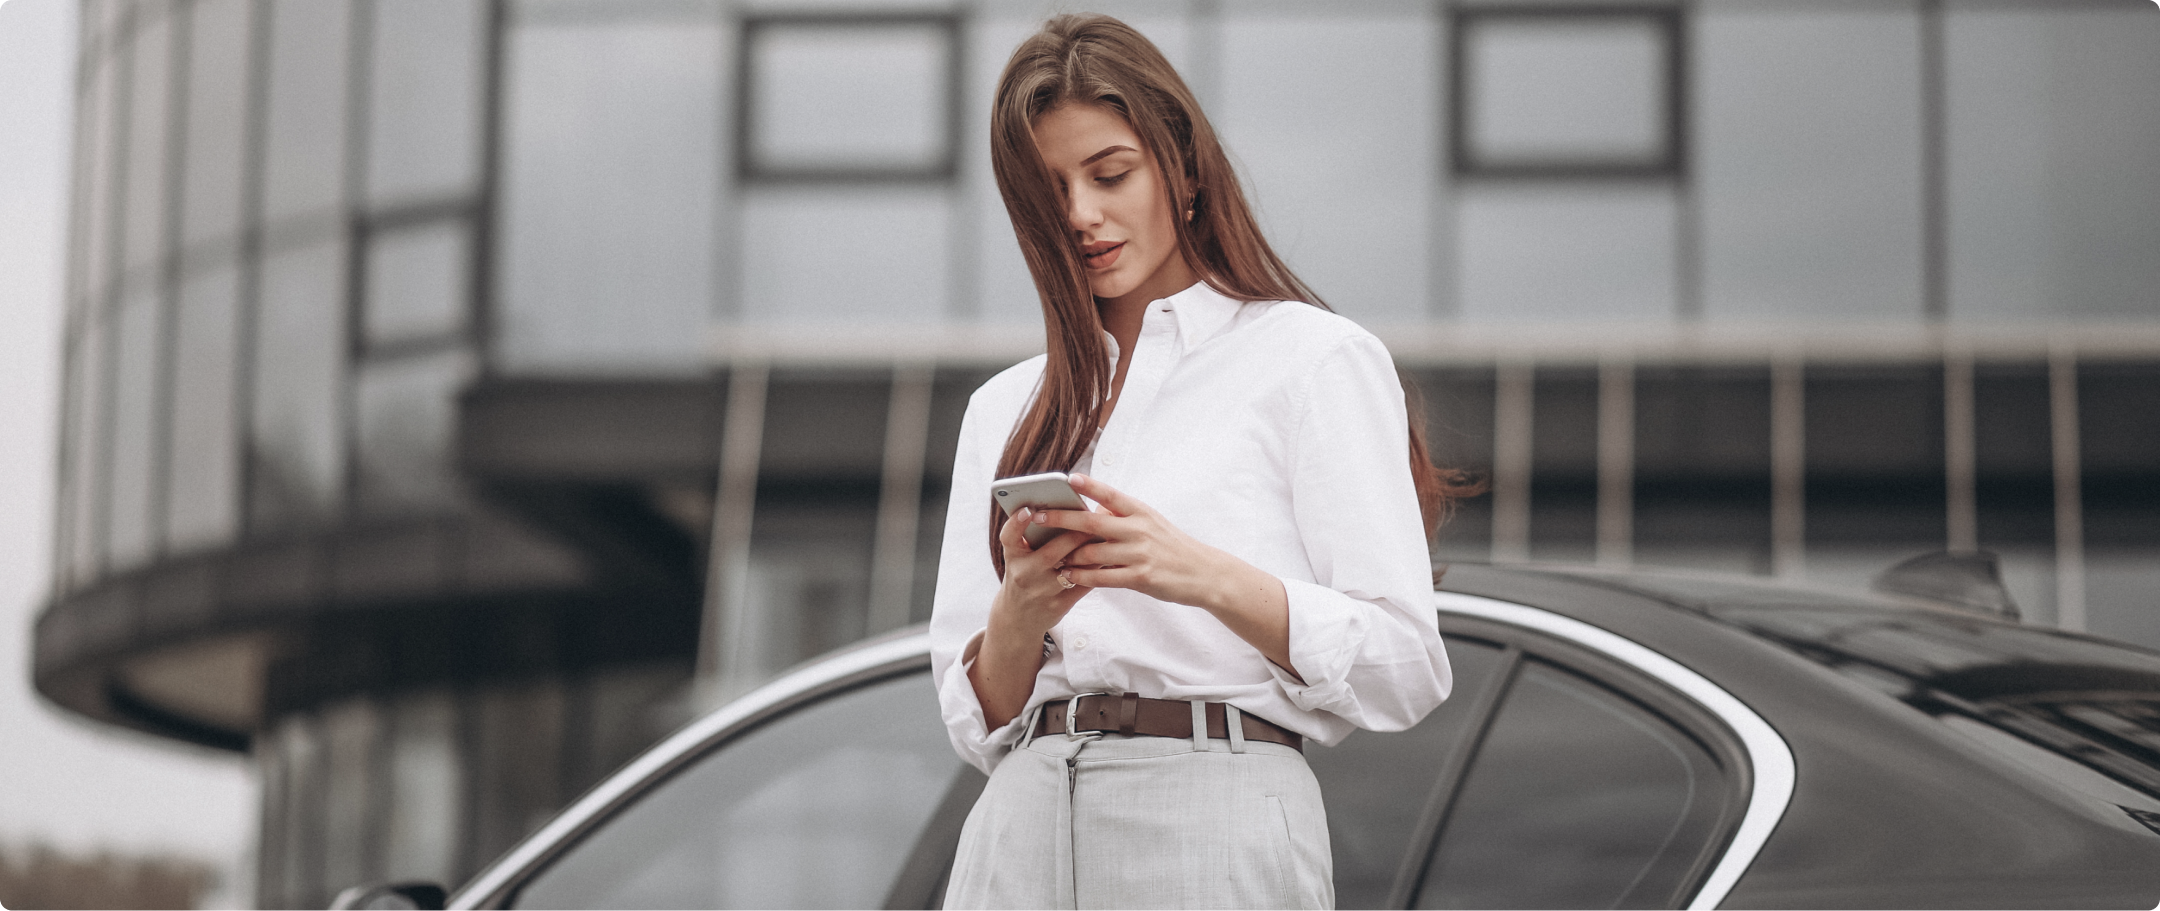 Mulher com cabelo castanho, vestindo camisa social branca para dentro da calça, segurando um celular e encostada em um carro.